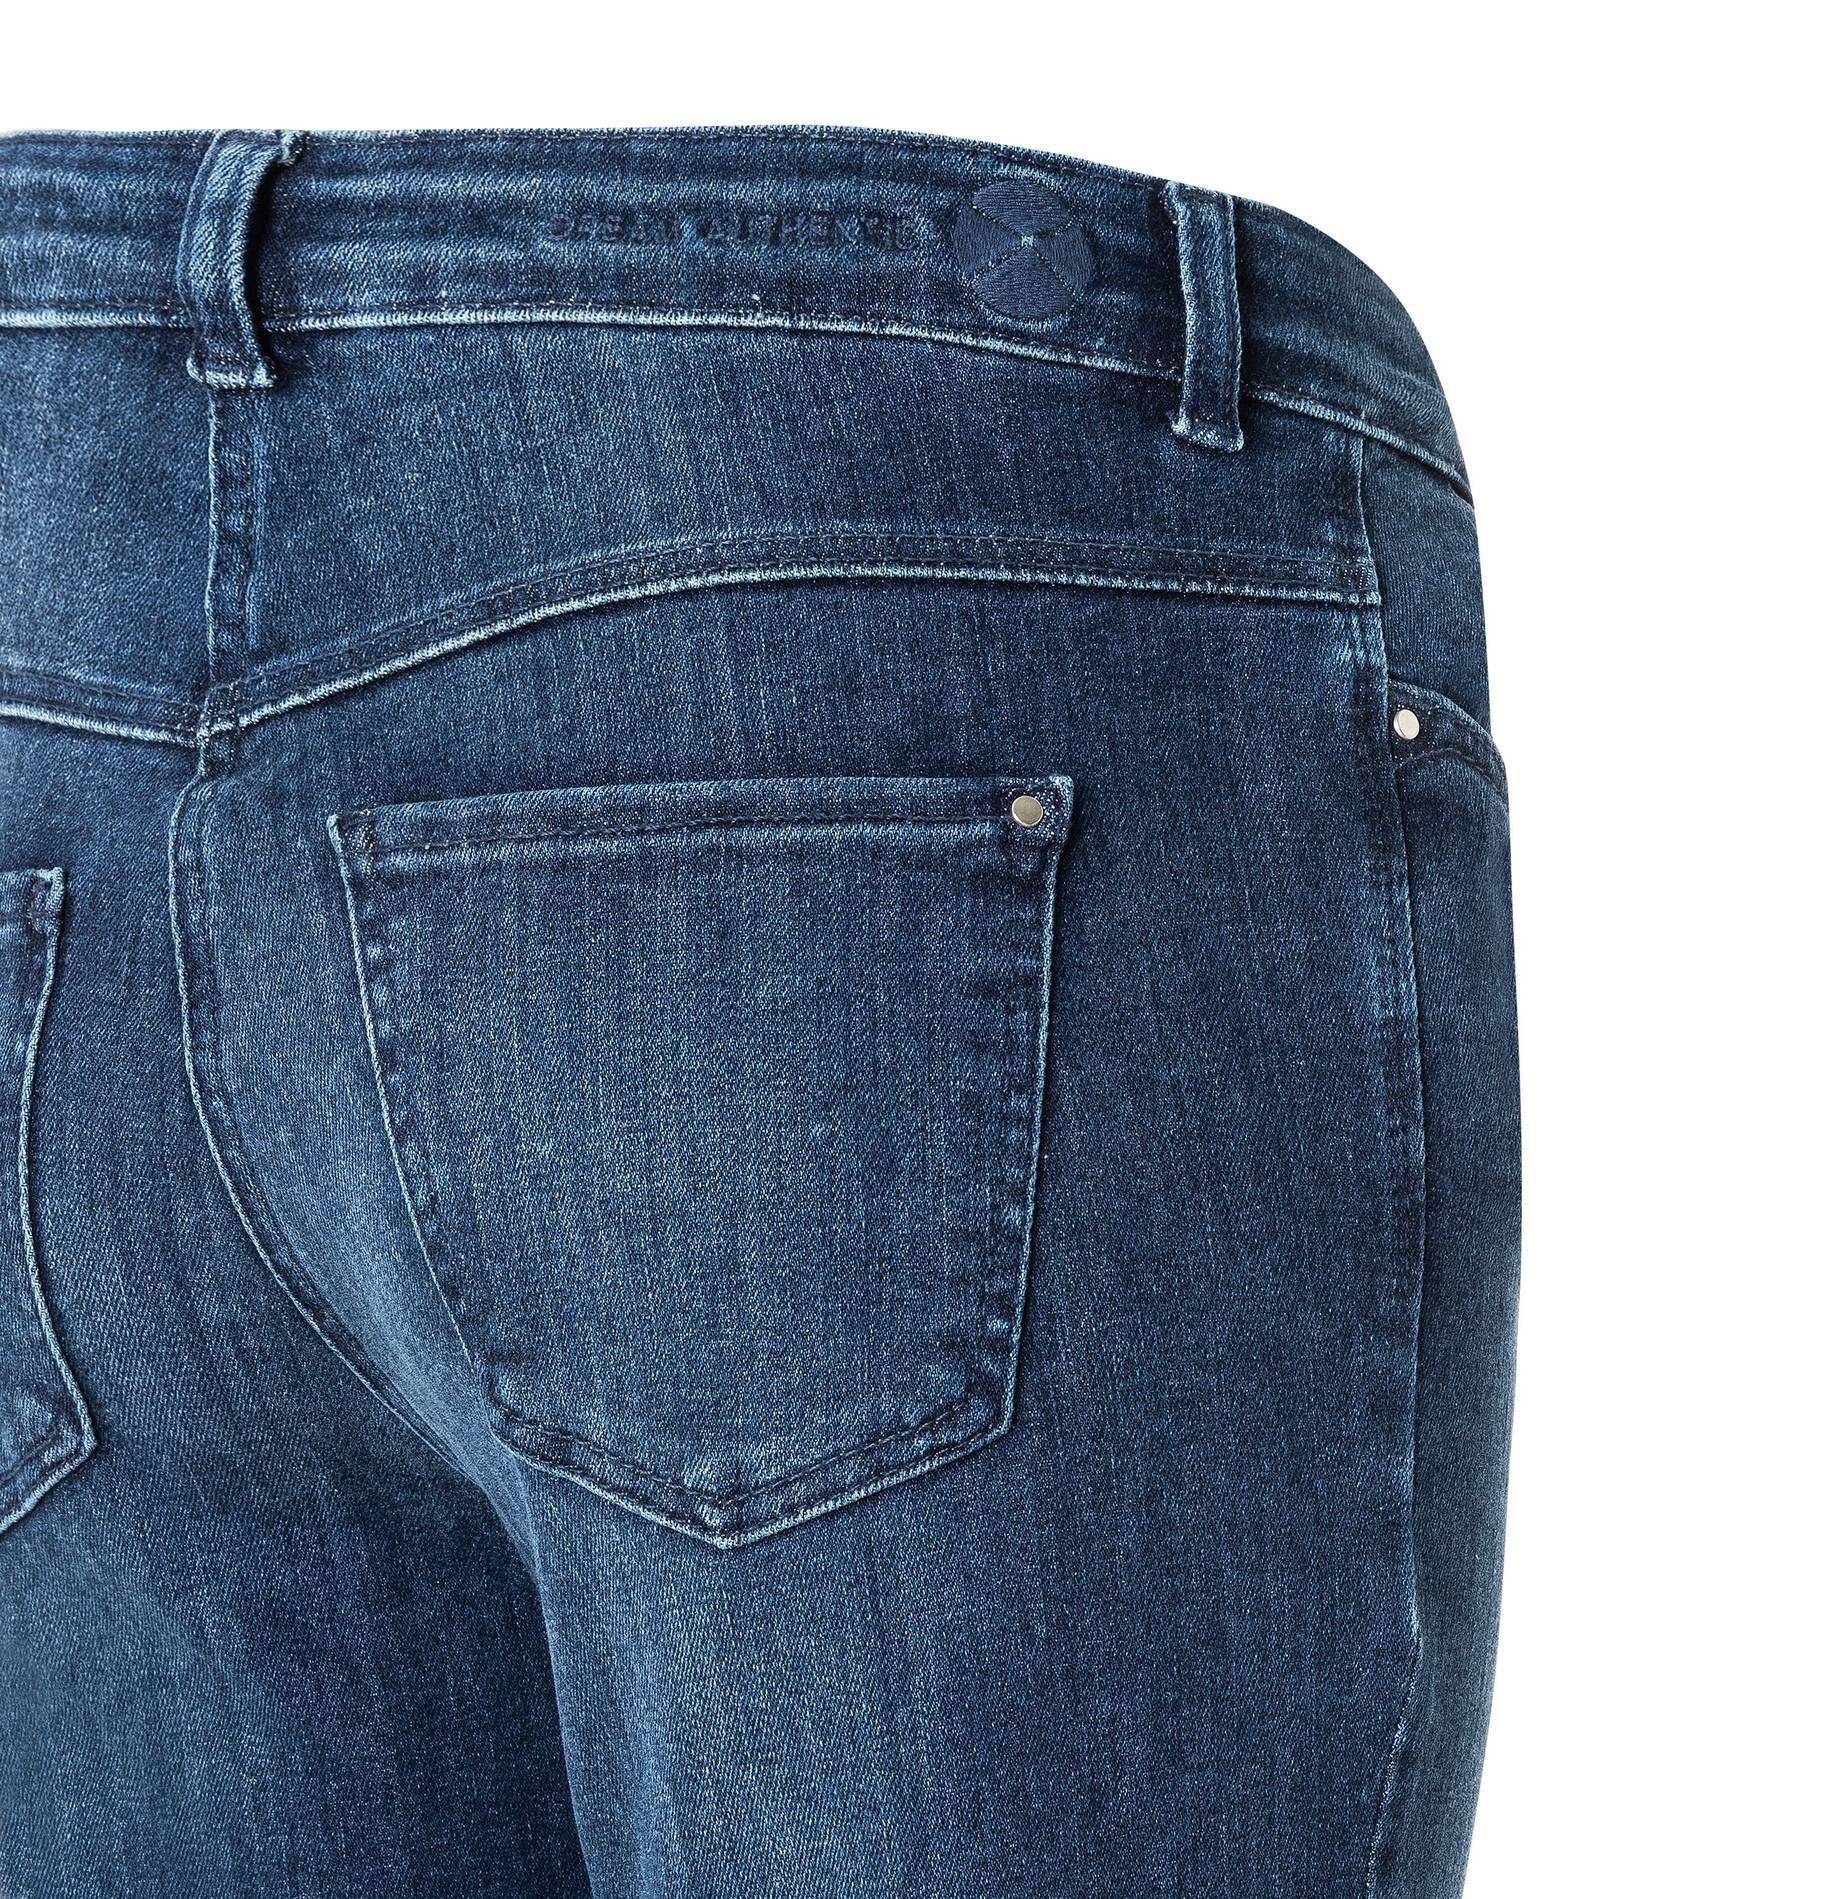 BOOT engelhorn | Damen Slim DREAM Jeans MAC Bootcut kaufen Fit